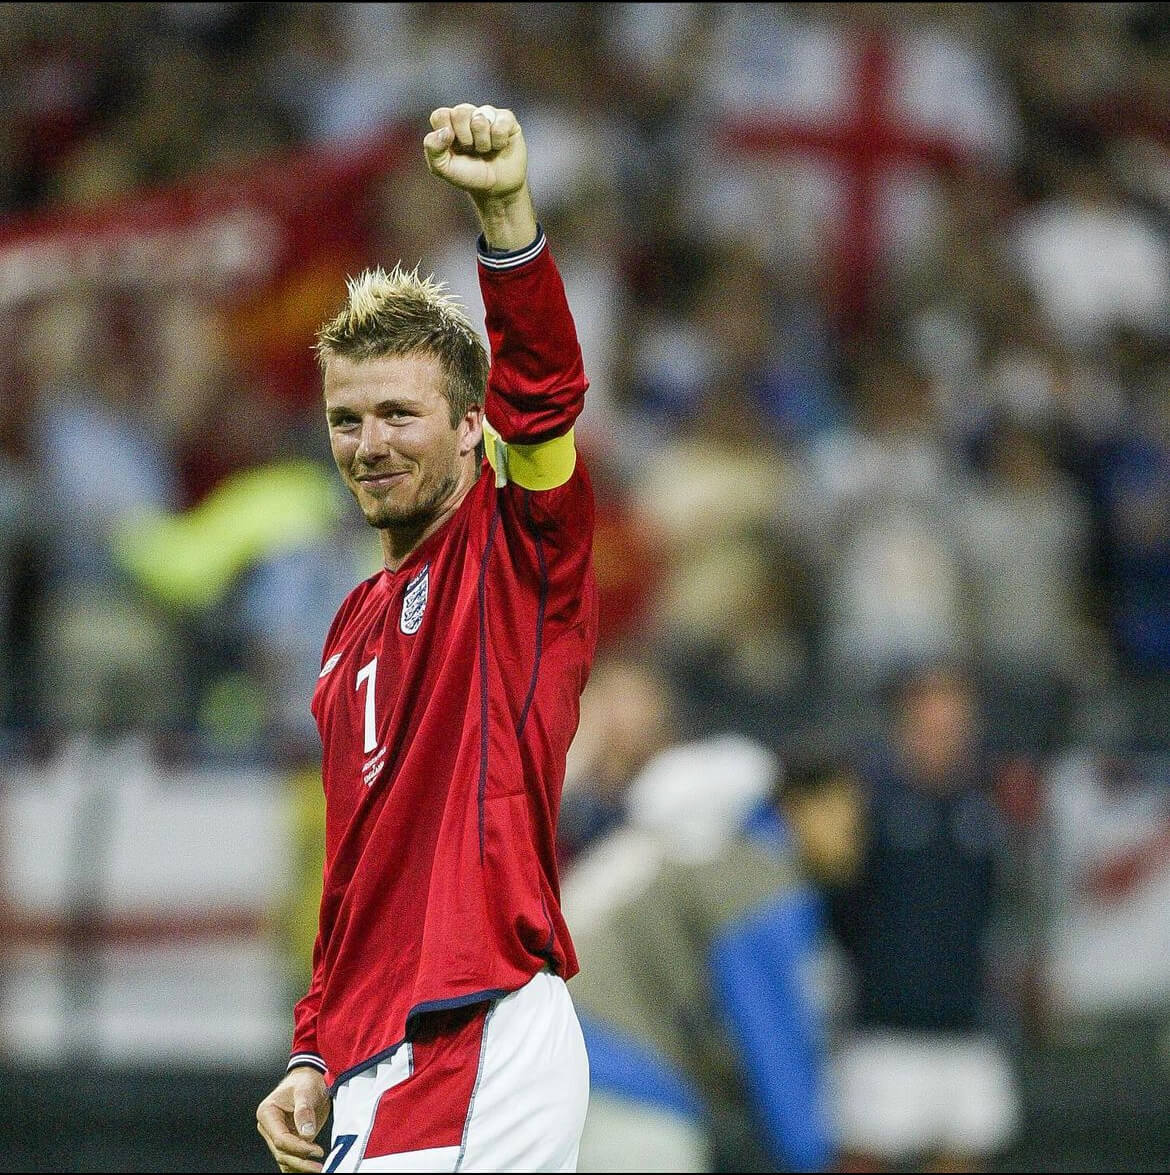 The football superstar David Beckham.